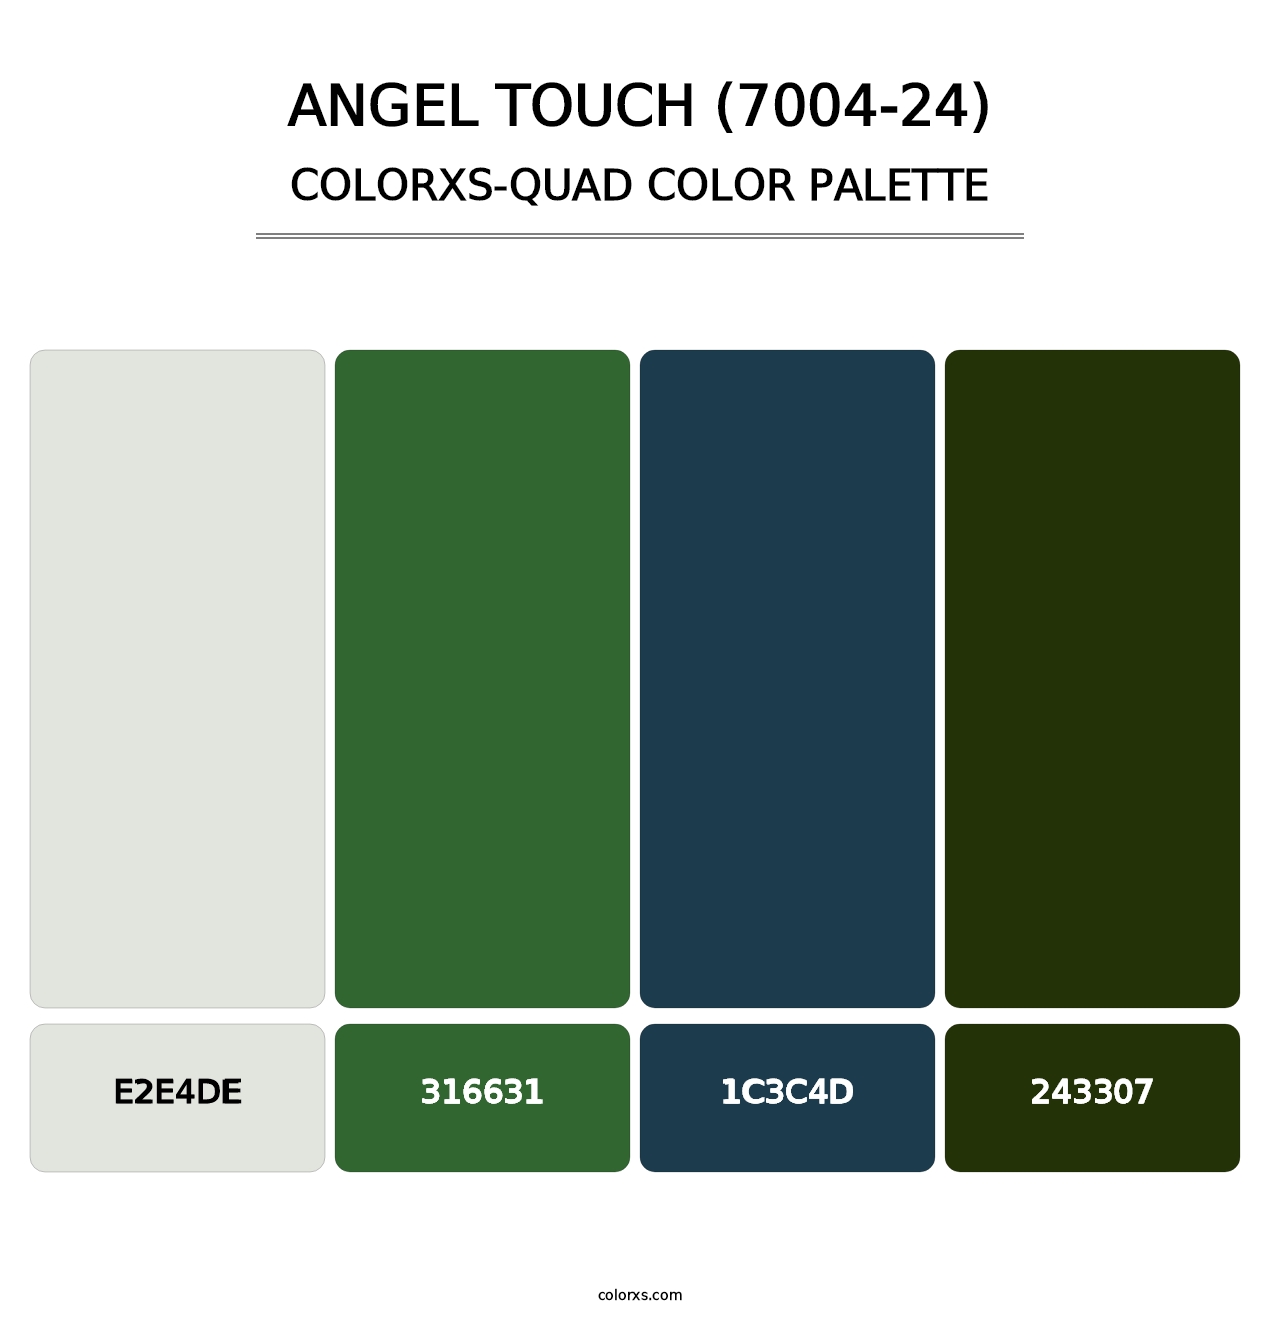 Angel Touch (7004-24) - Colorxs Quad Palette